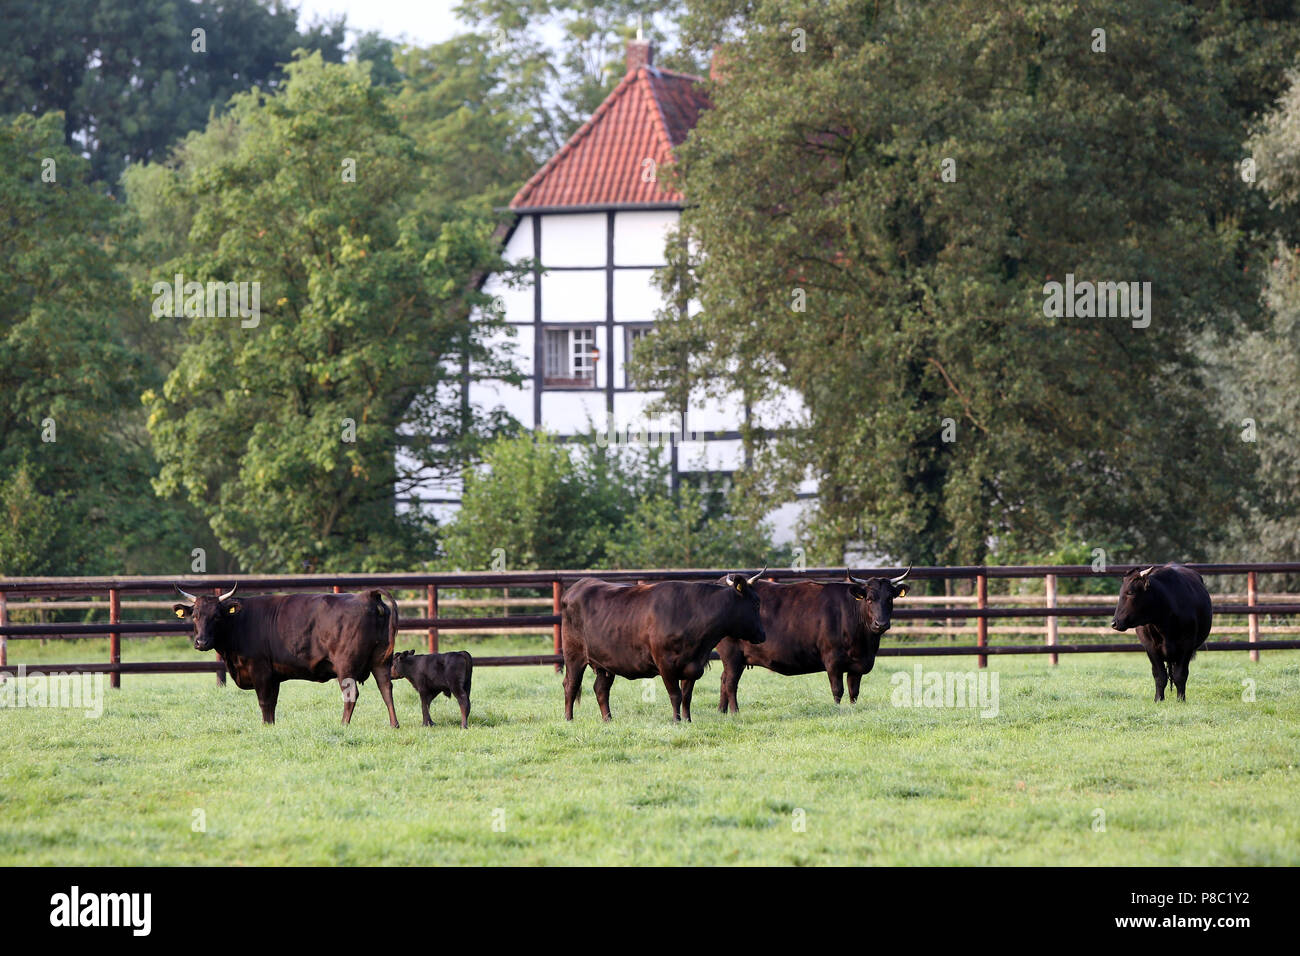 Gestüt Itlingen, cattle on a paddock Stock Photo